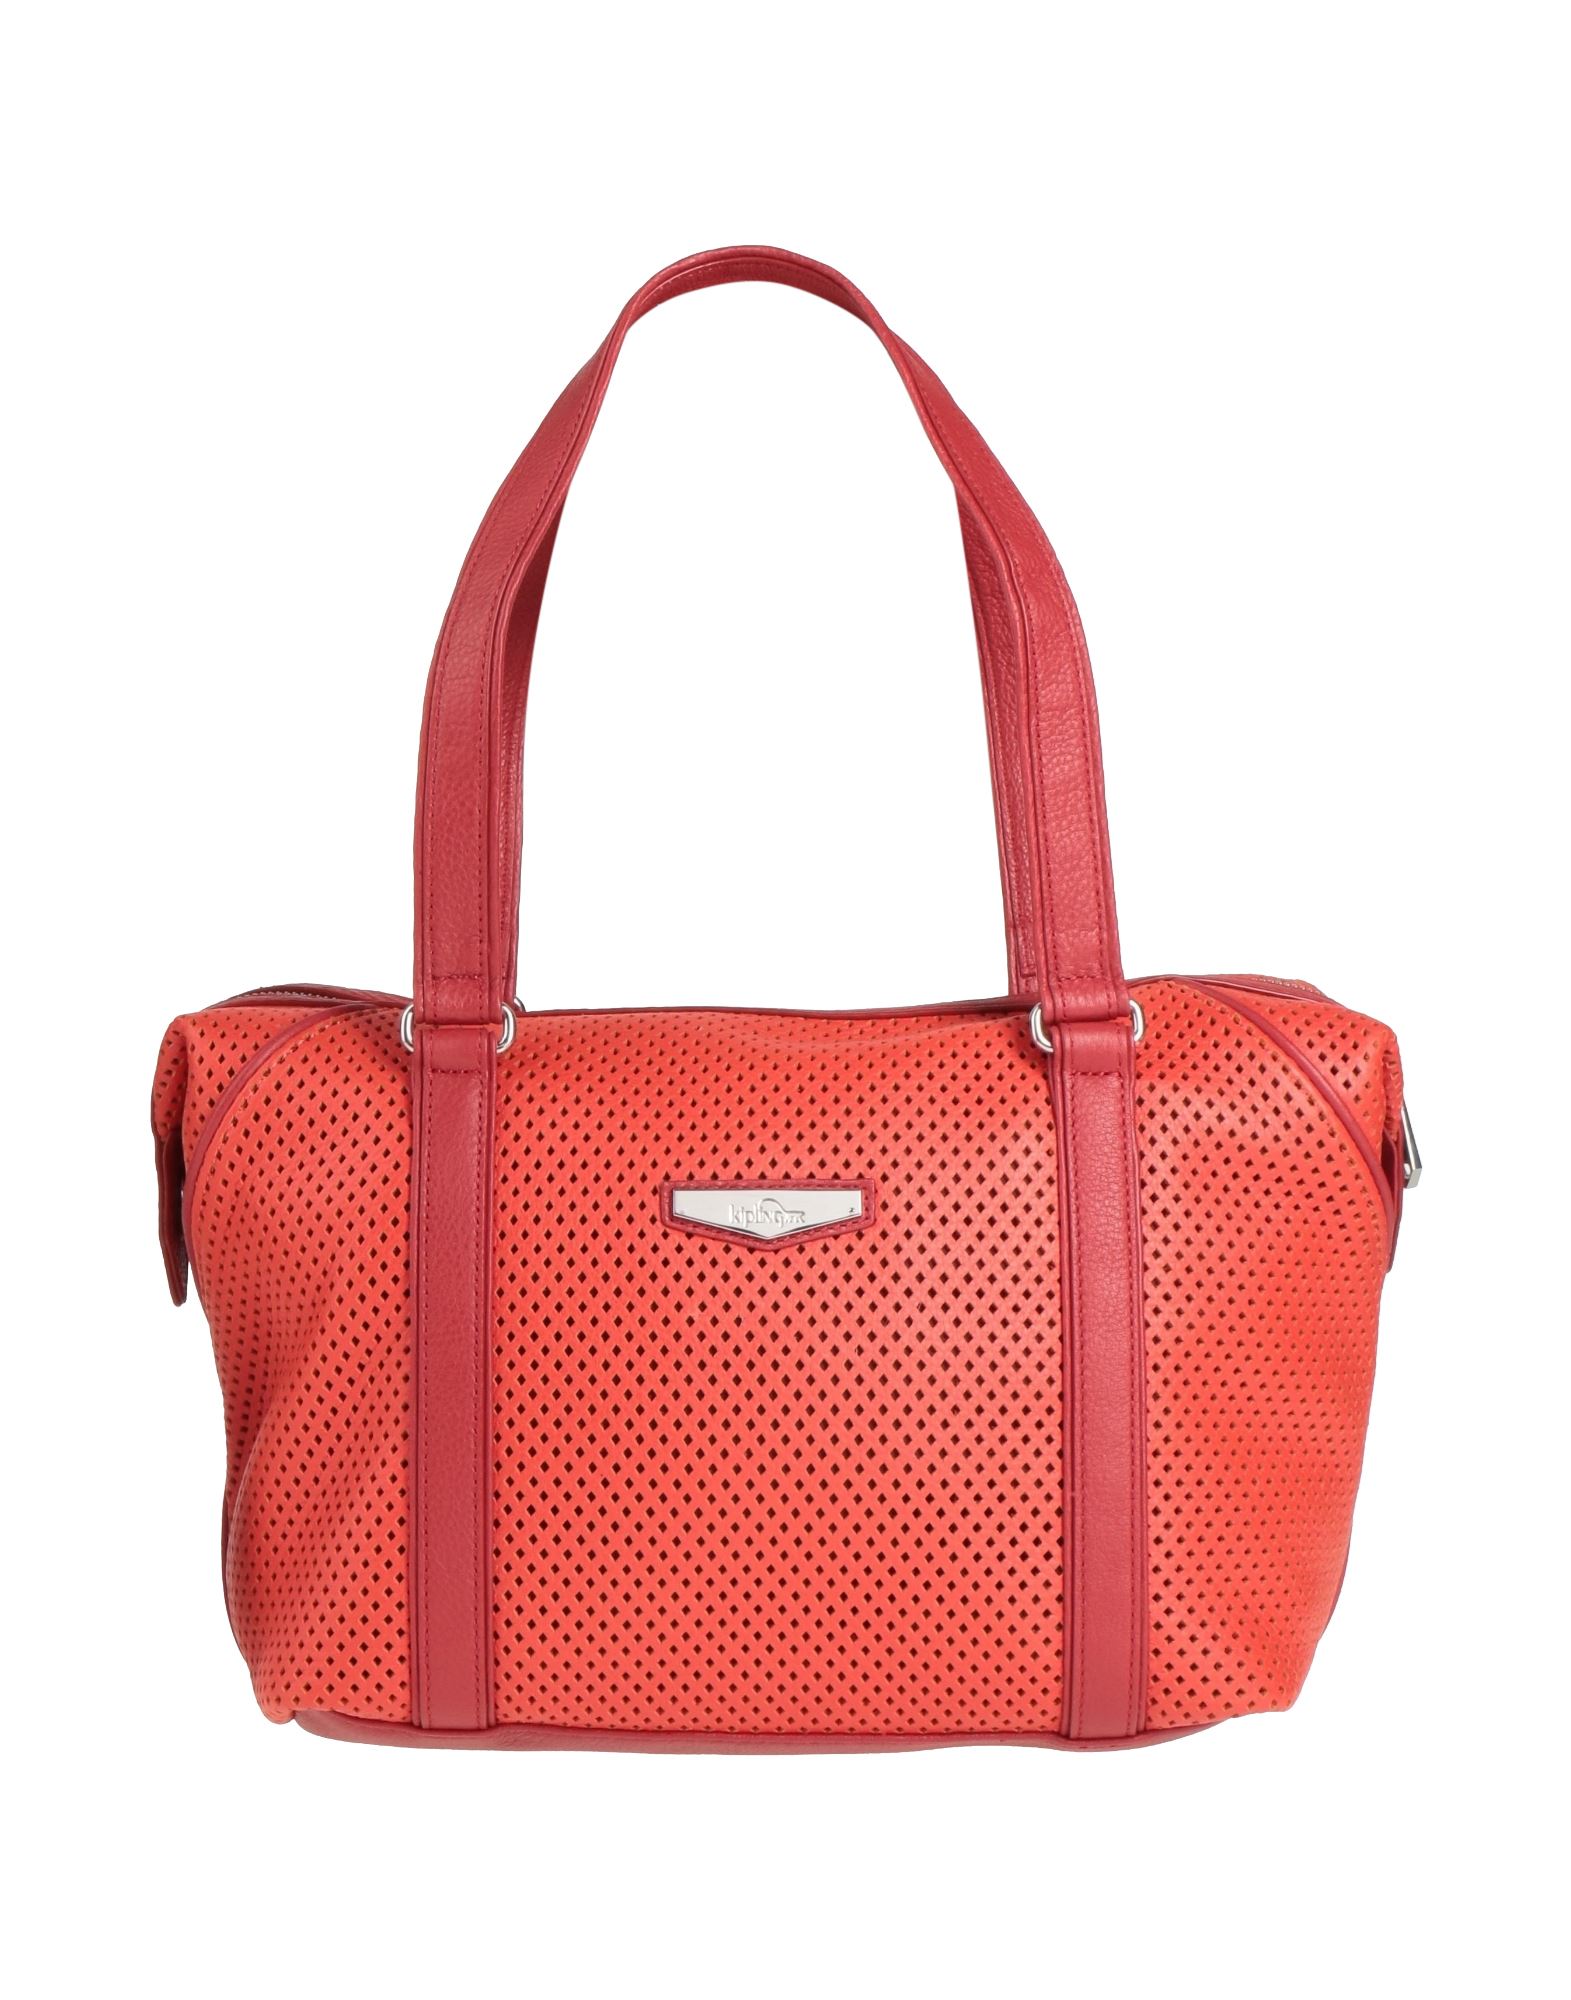 Kipling Handbags In Red